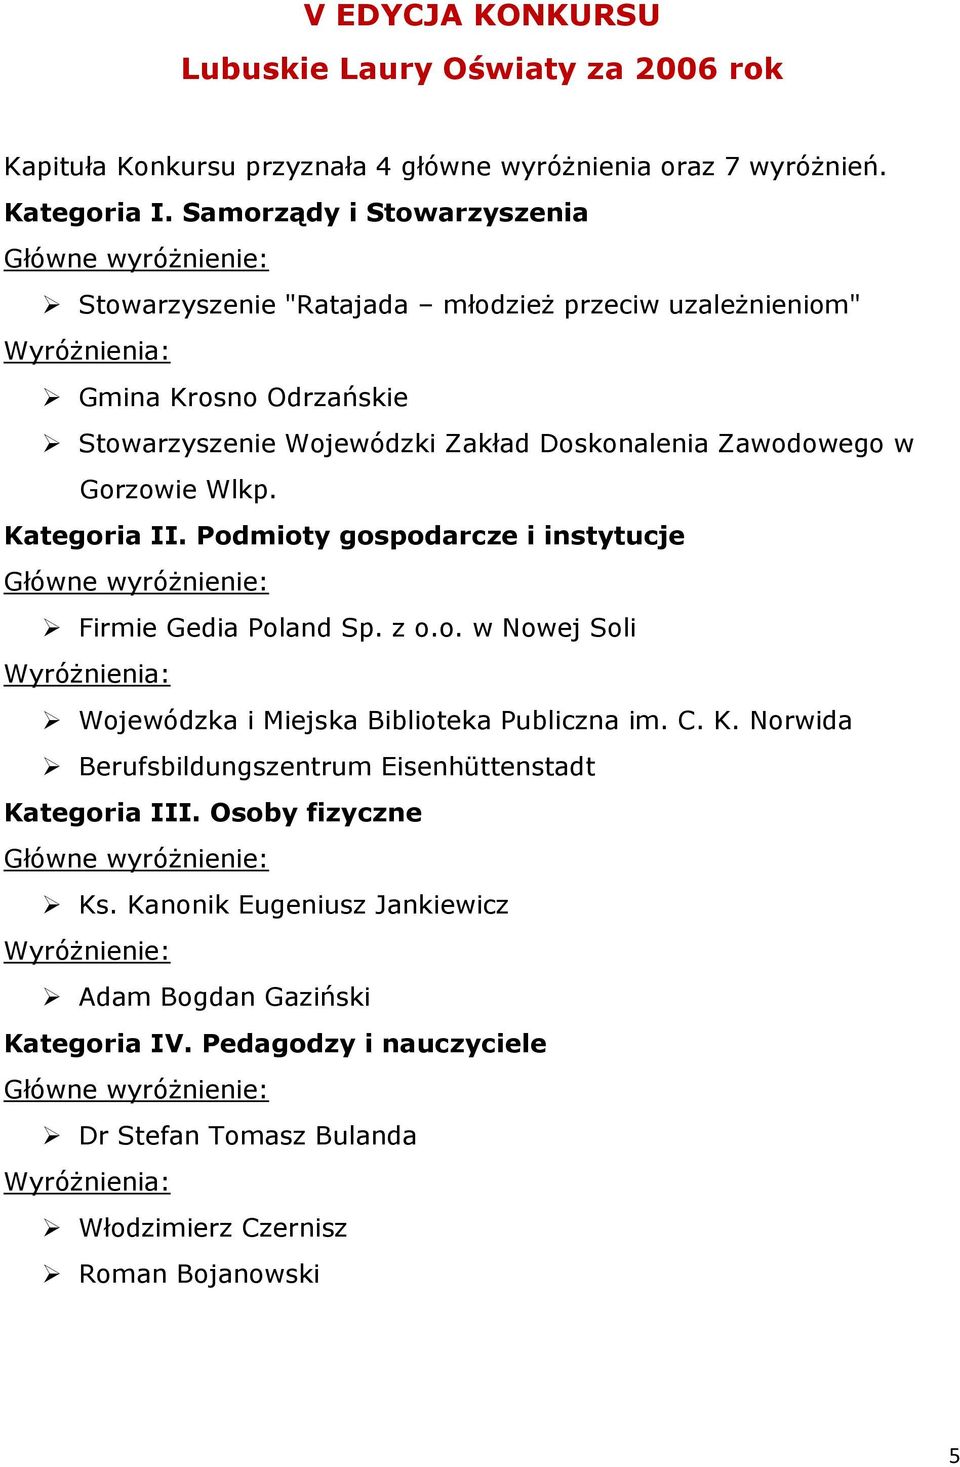 Zawodowego w Gorzowie Wlkp. Firmie Gedia Poland Sp. z o.o. w Nowej Soli Wojewódzka i Miejska Biblioteka Publiczna im. C. K.